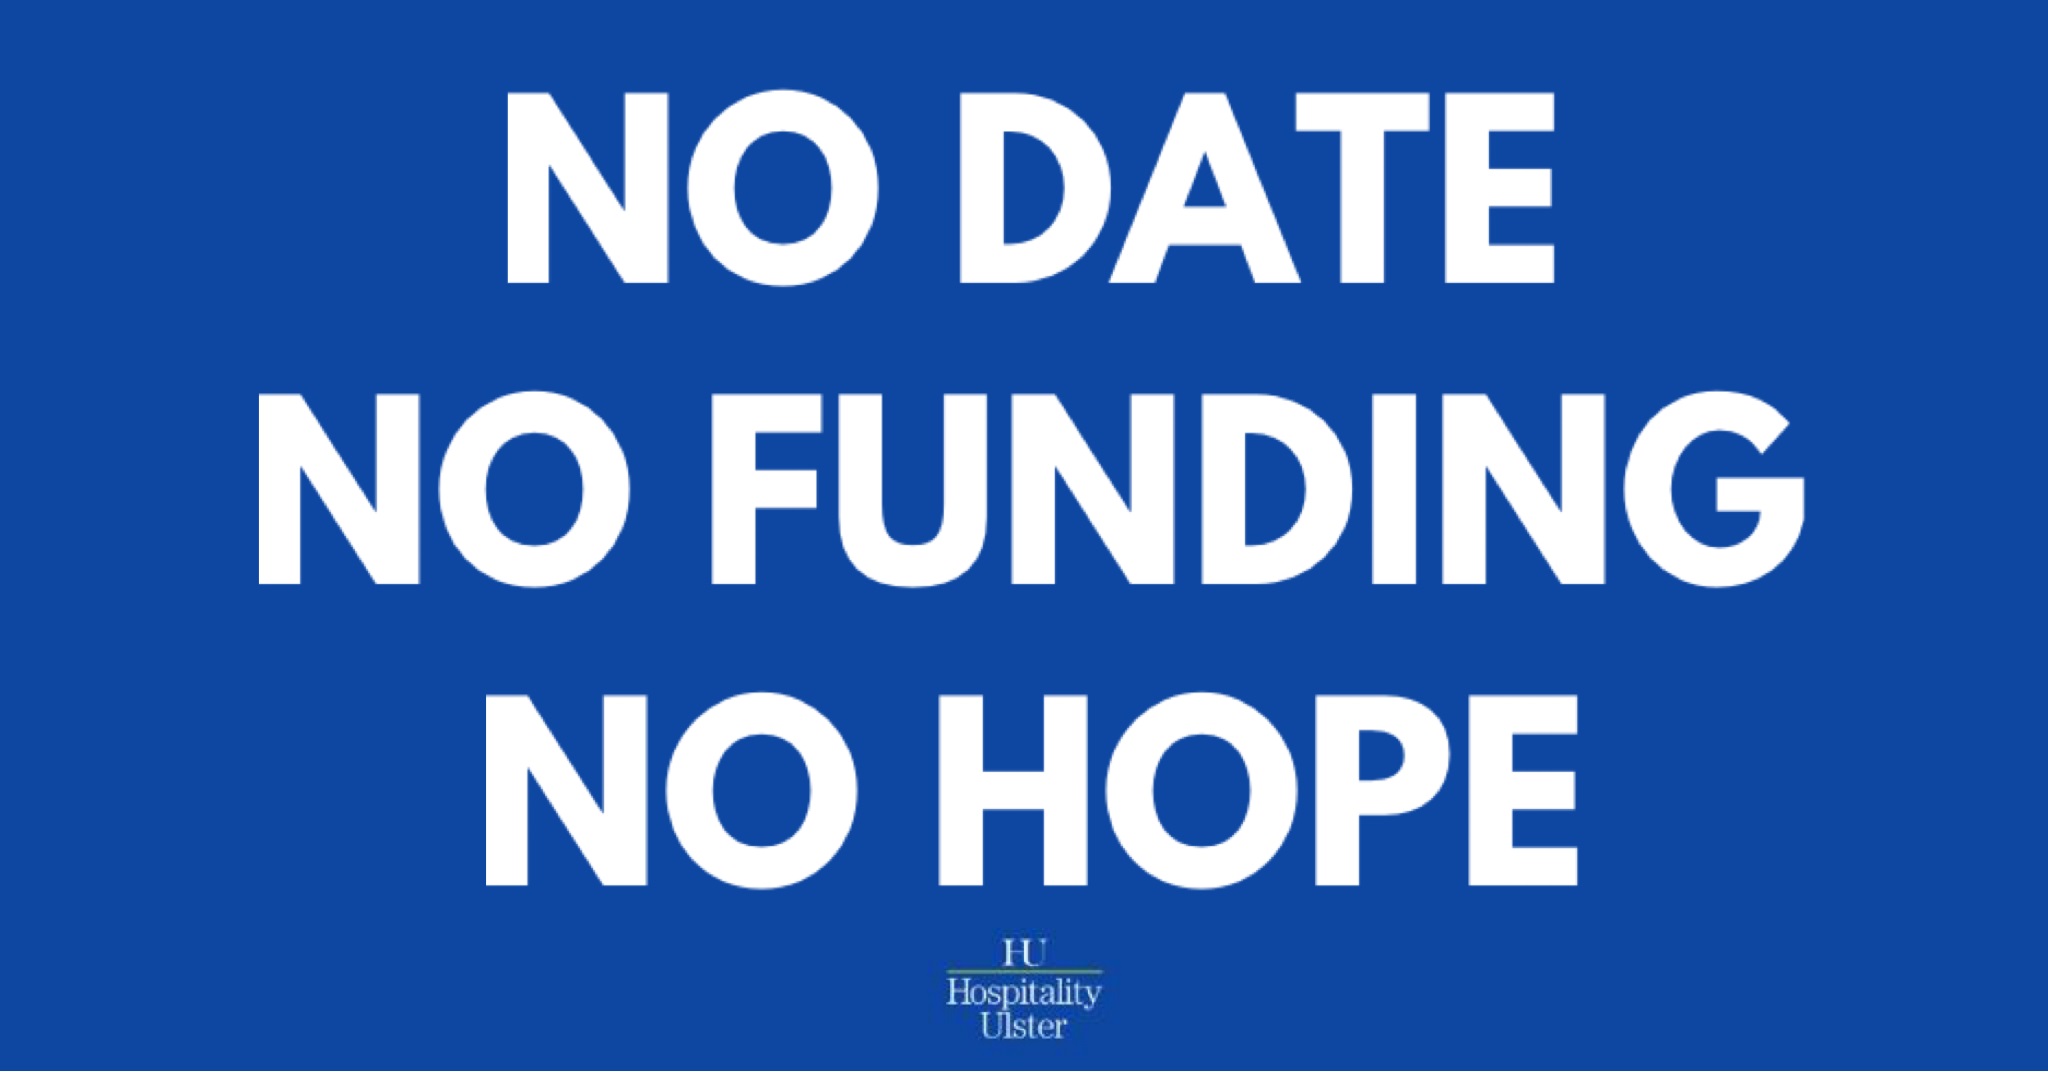 NO DATE - NO FUNDING - NO HOPE